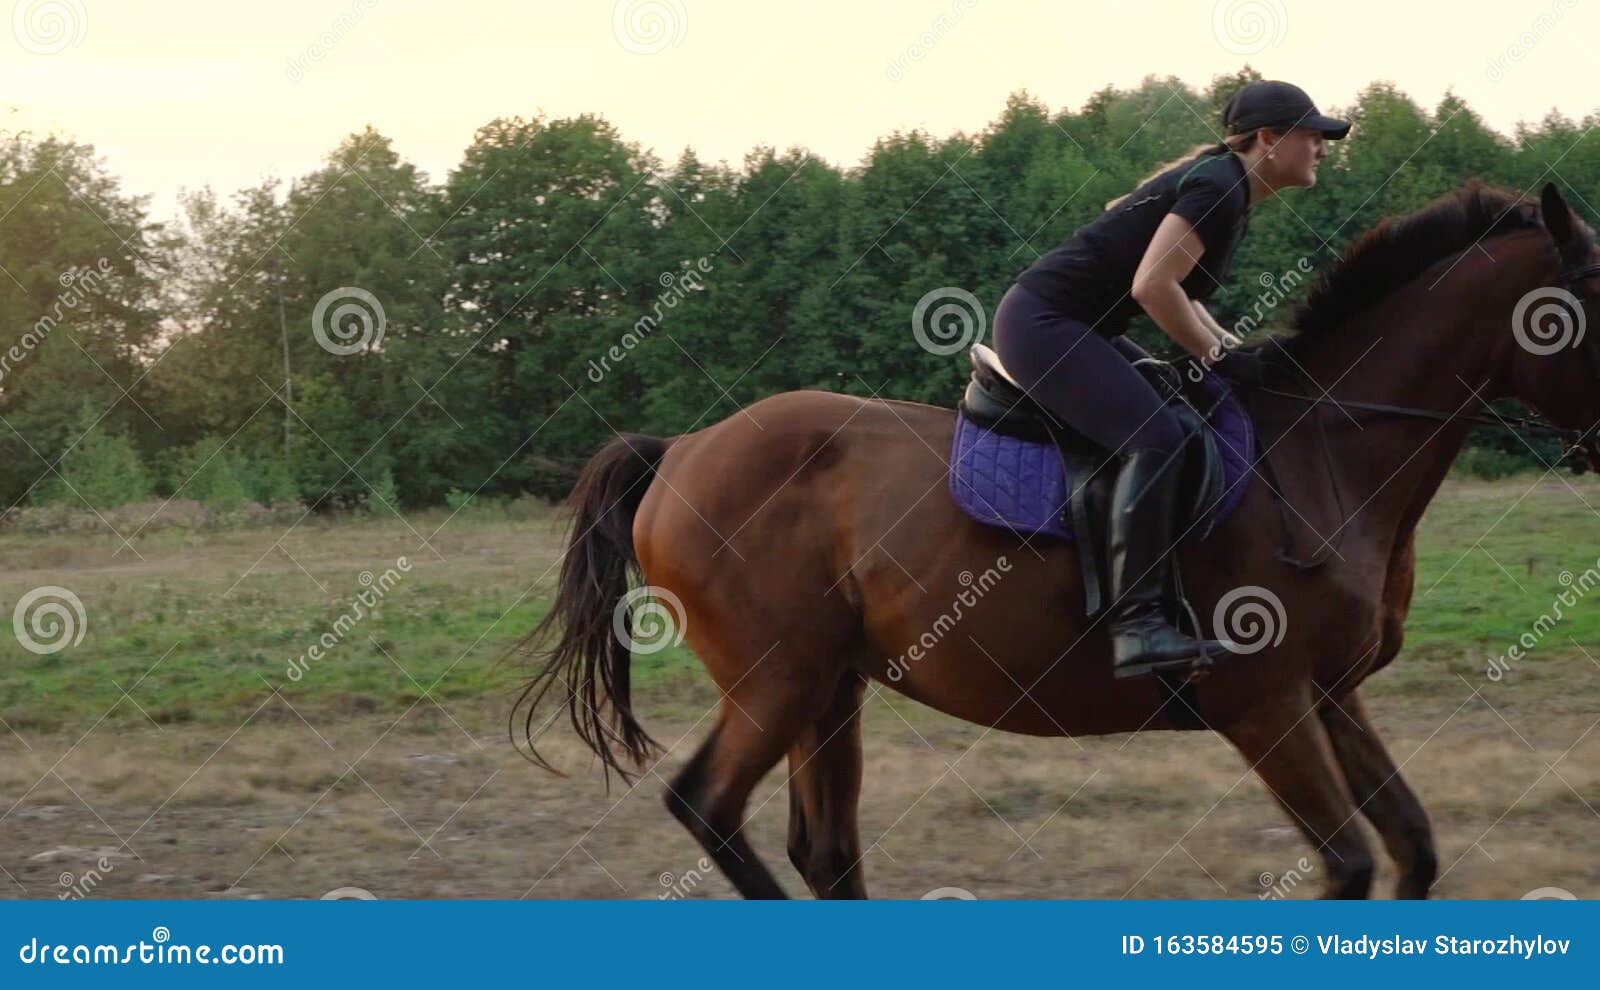 Há uma mulher andando a cavalo pulando sobre uma cerca de madeira